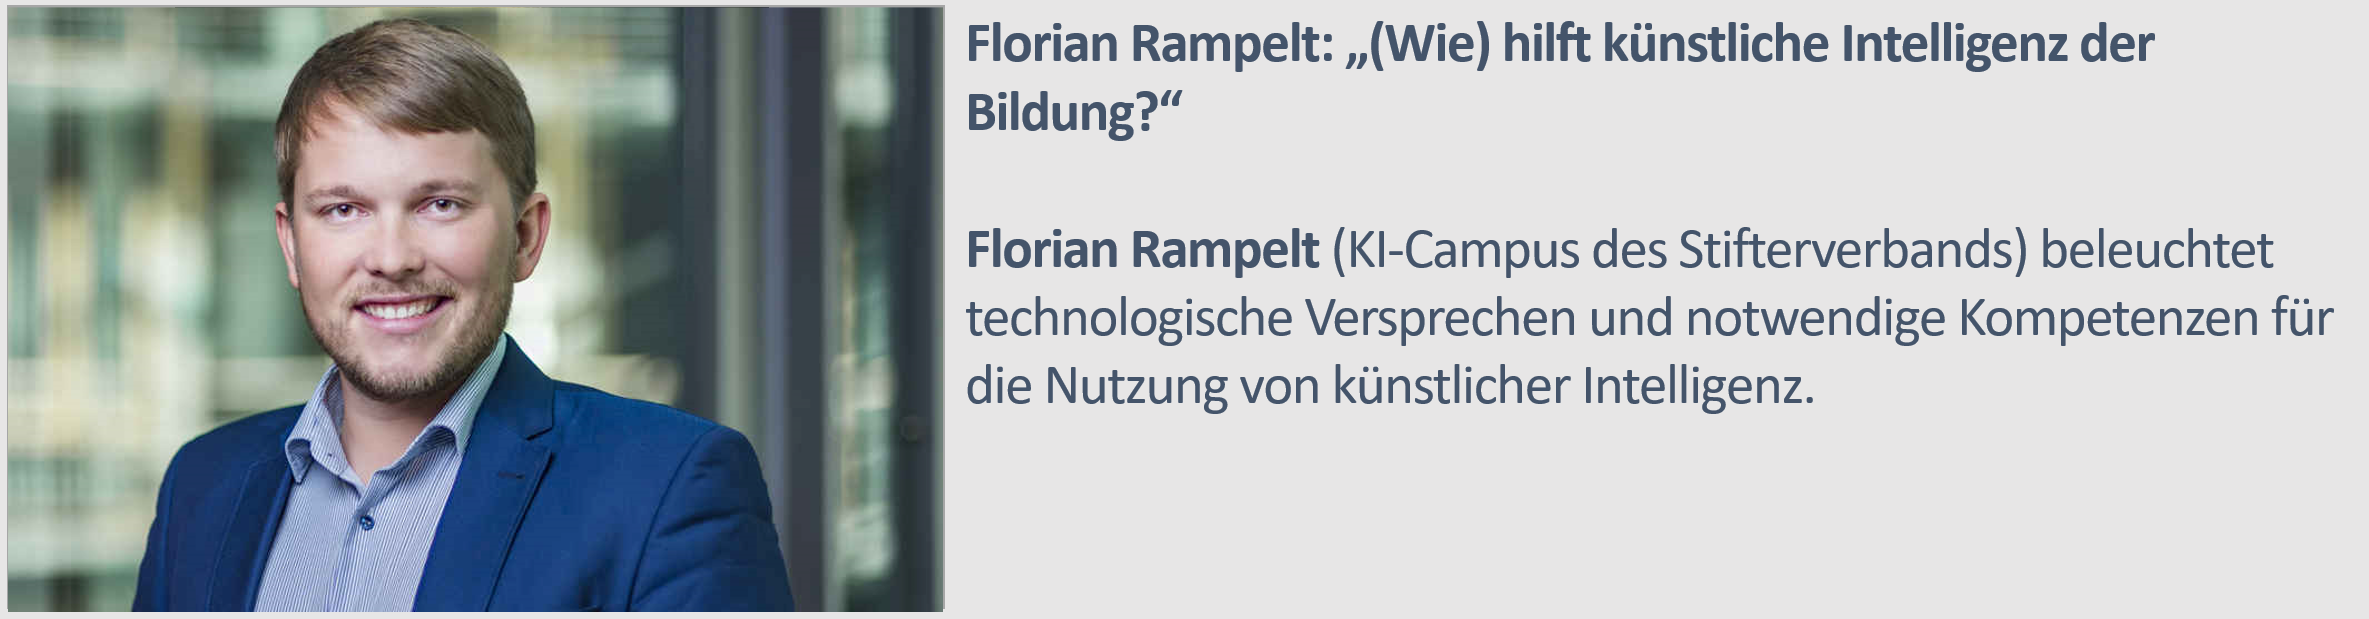 Florian Rampelt